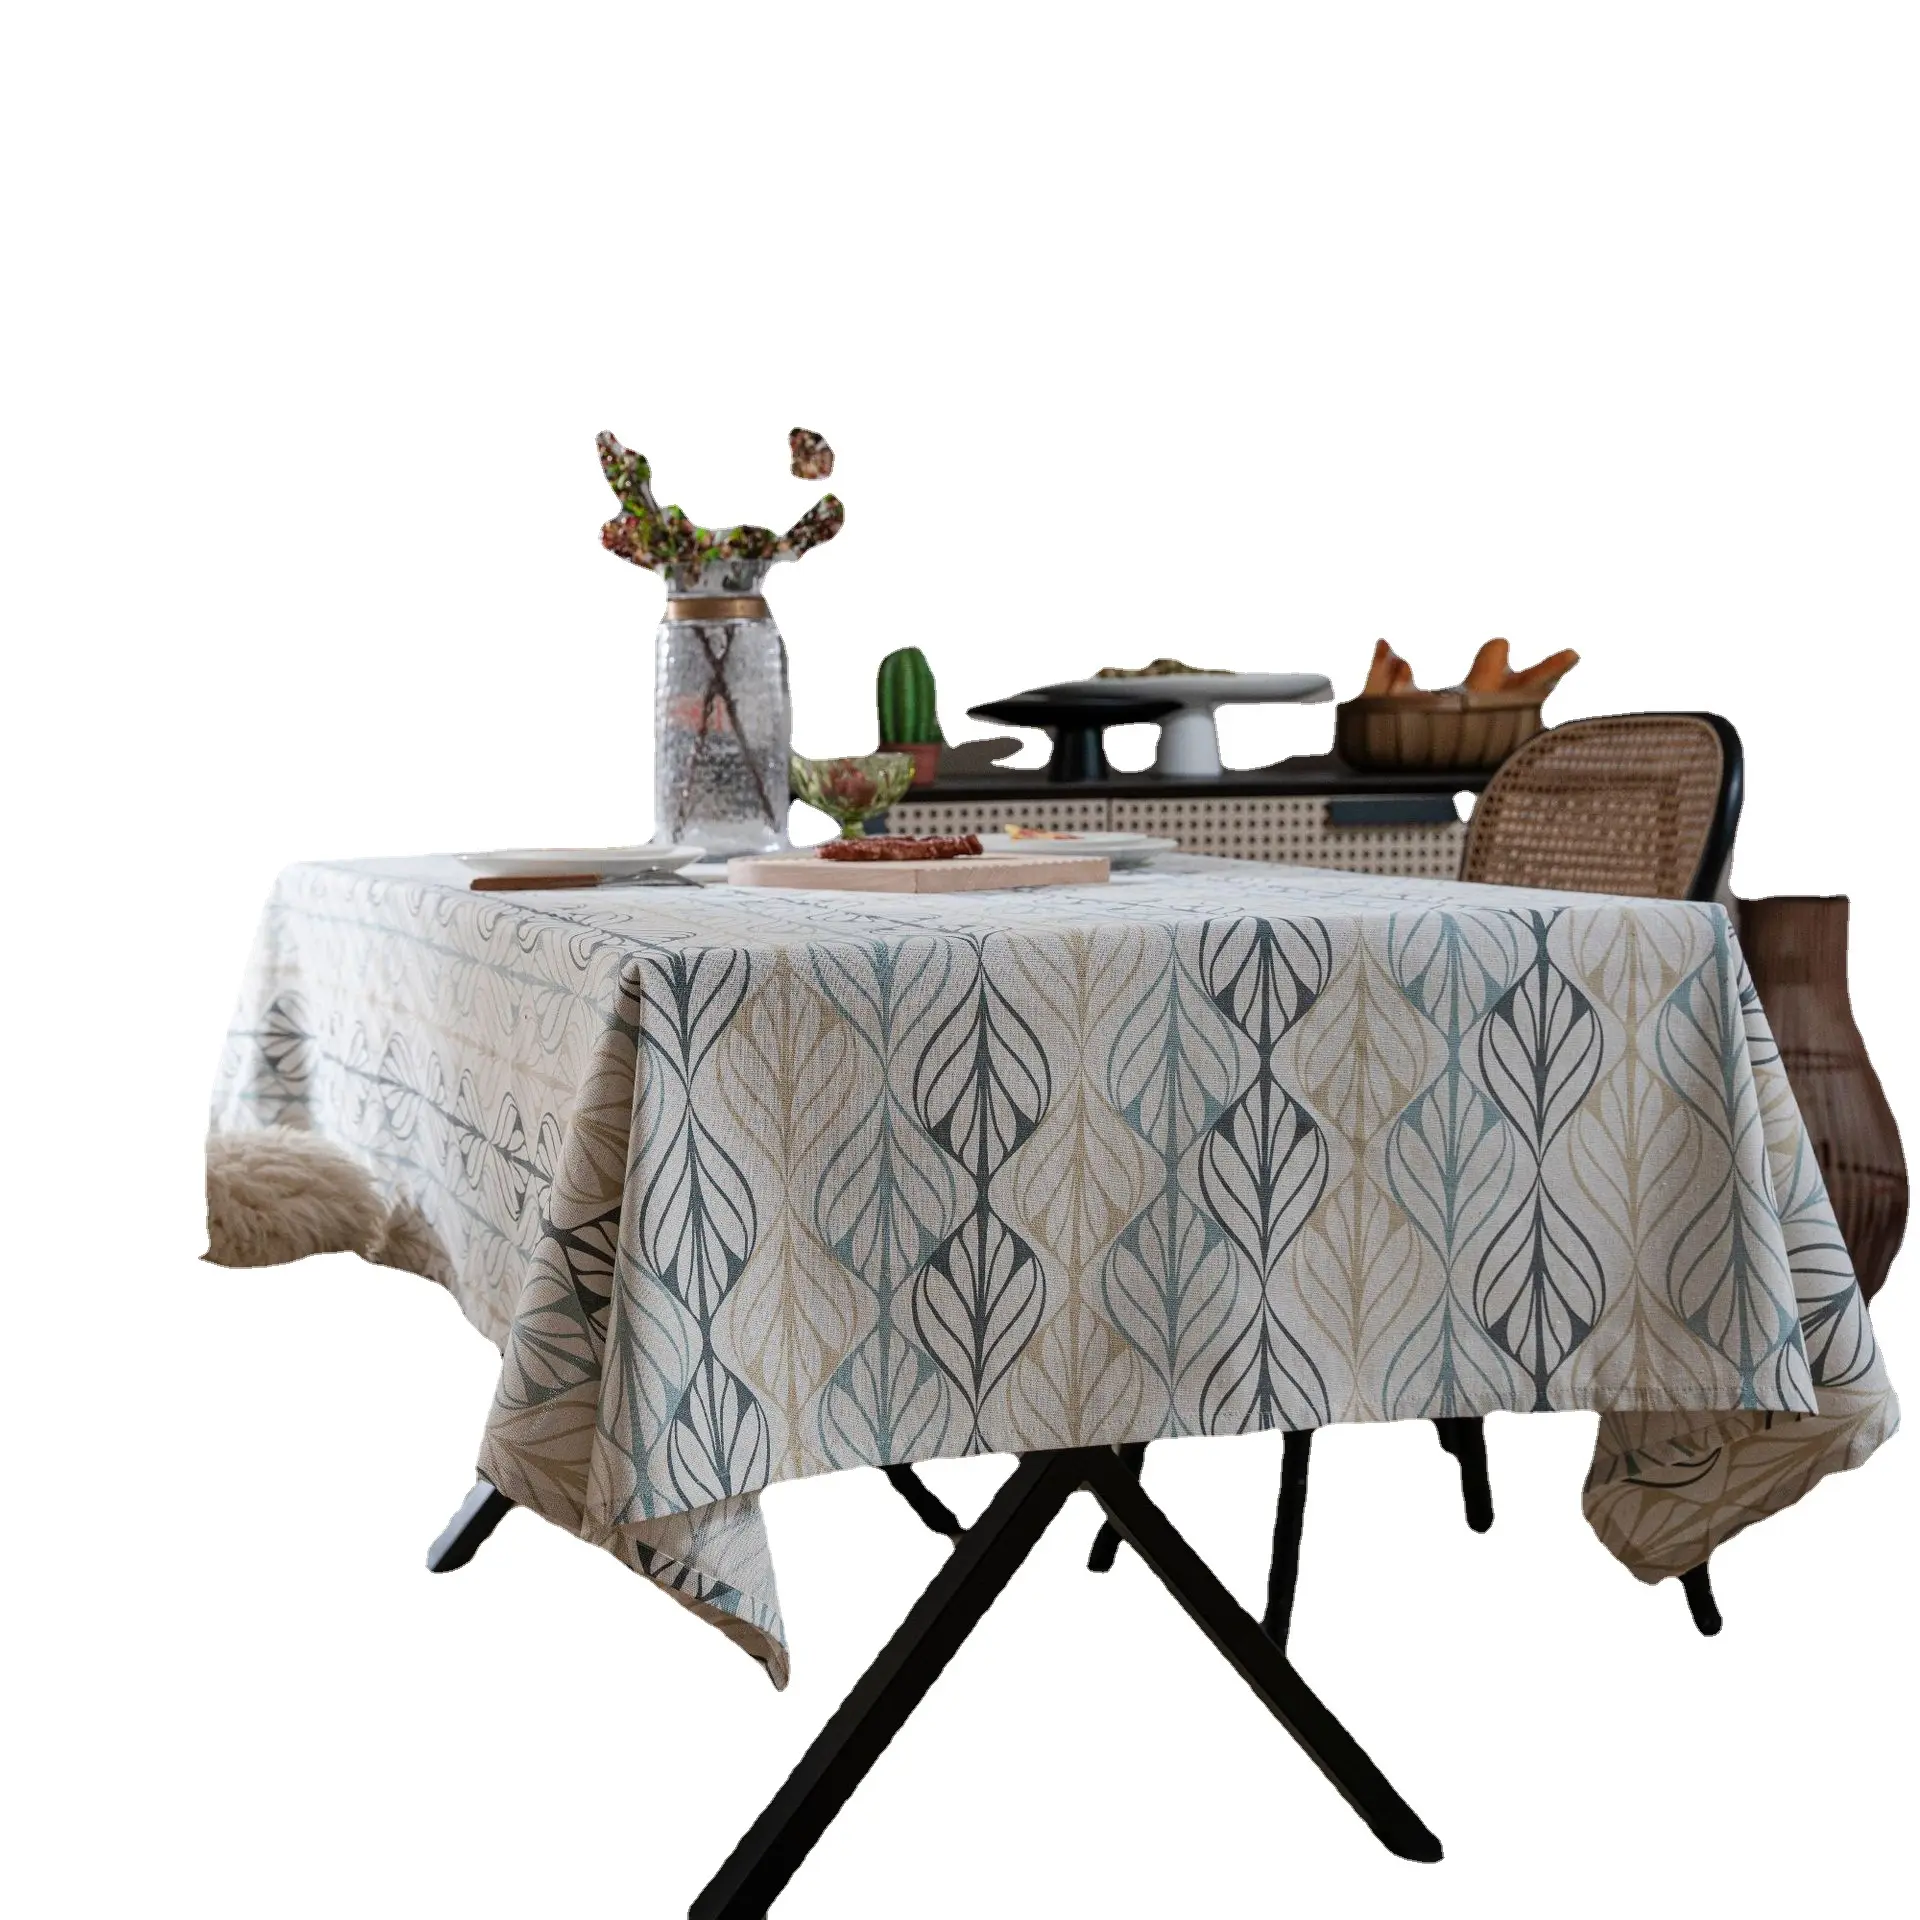 مفرش طاولة من القطن والكتان بتصميم مستطيل كلاسيكي غطاء طاولة مناسب للخارج والداخل مناسب للنزهات والطعام